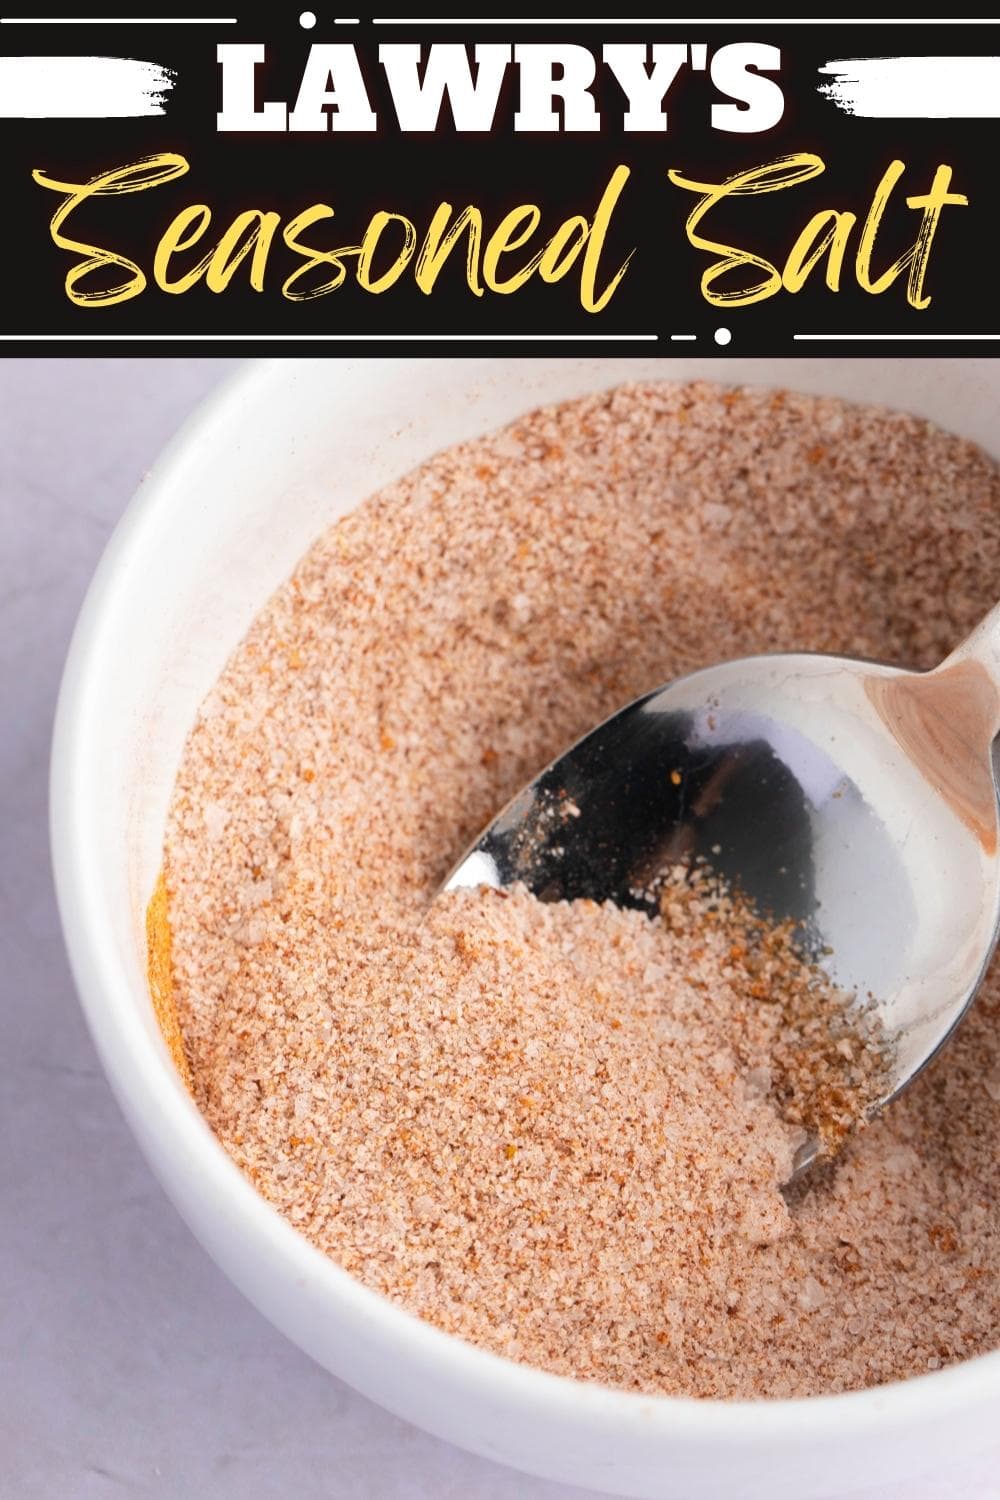 Lawrys Seasoned Salt Copycat Recipe Insanely Good